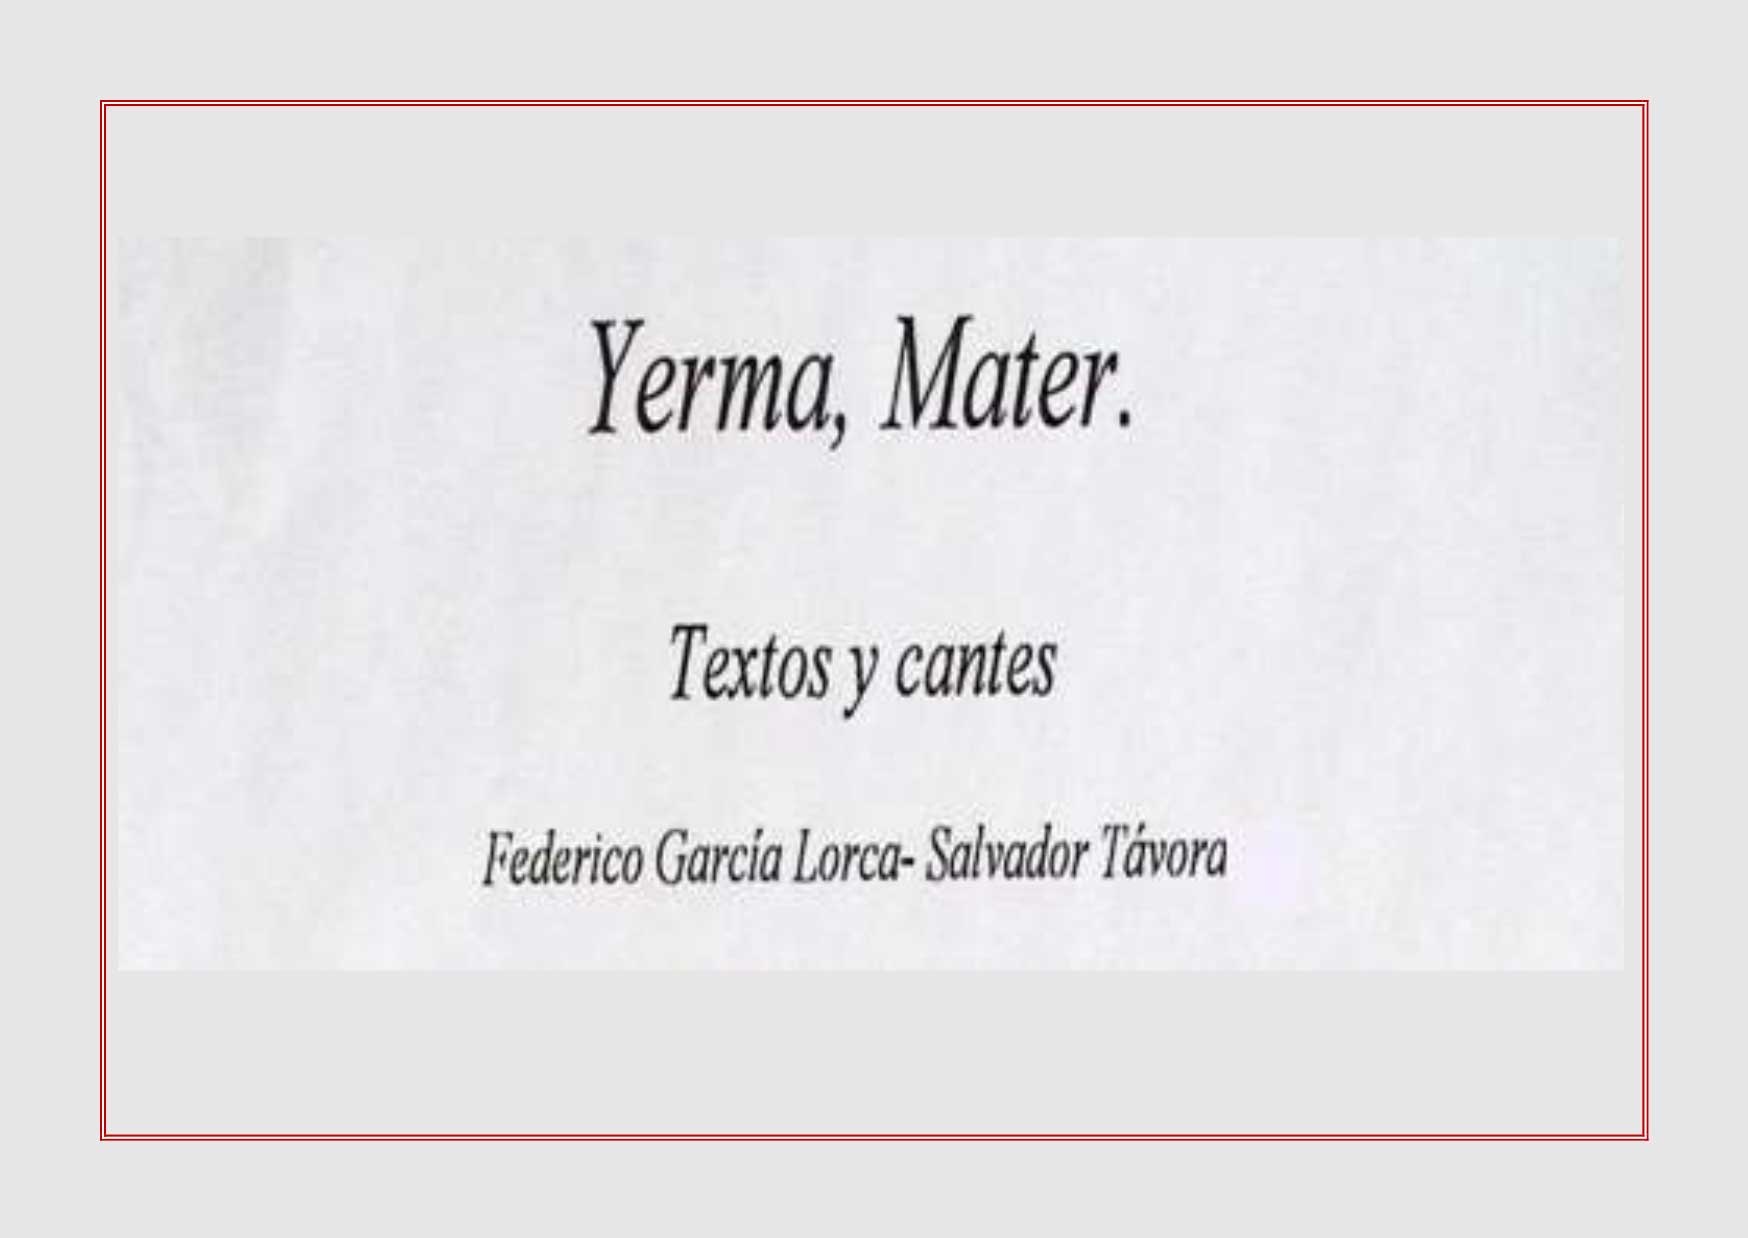 Yerma, Mater. Textos y cantes. Federico García Lorca-Salvador Távora